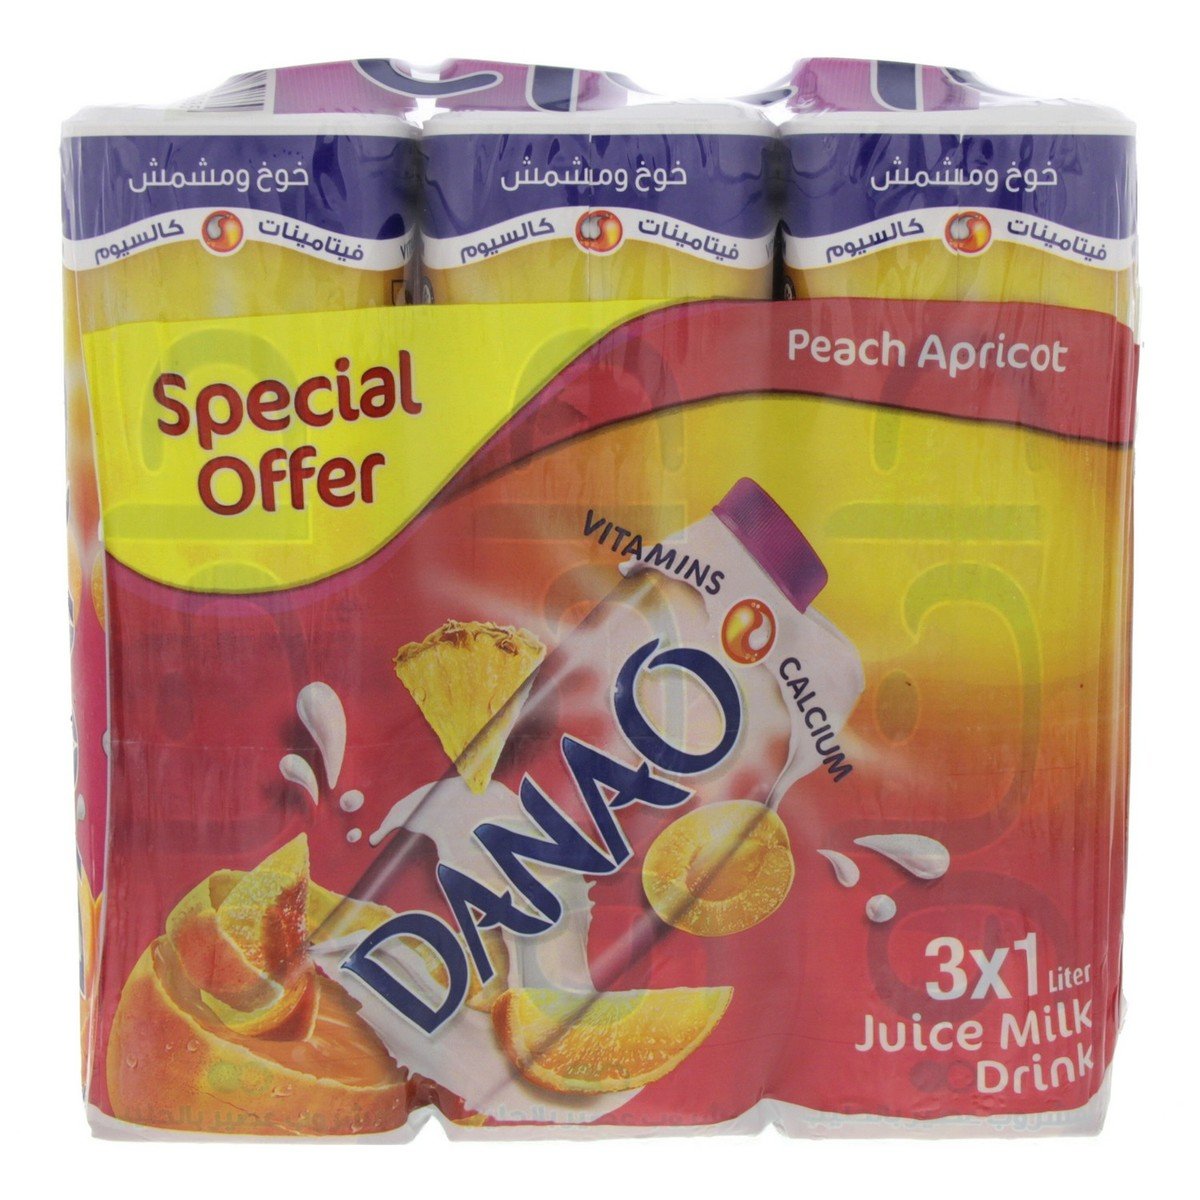 Danao Peach Apricot Juice Milk Drink 3 x 1 Litre